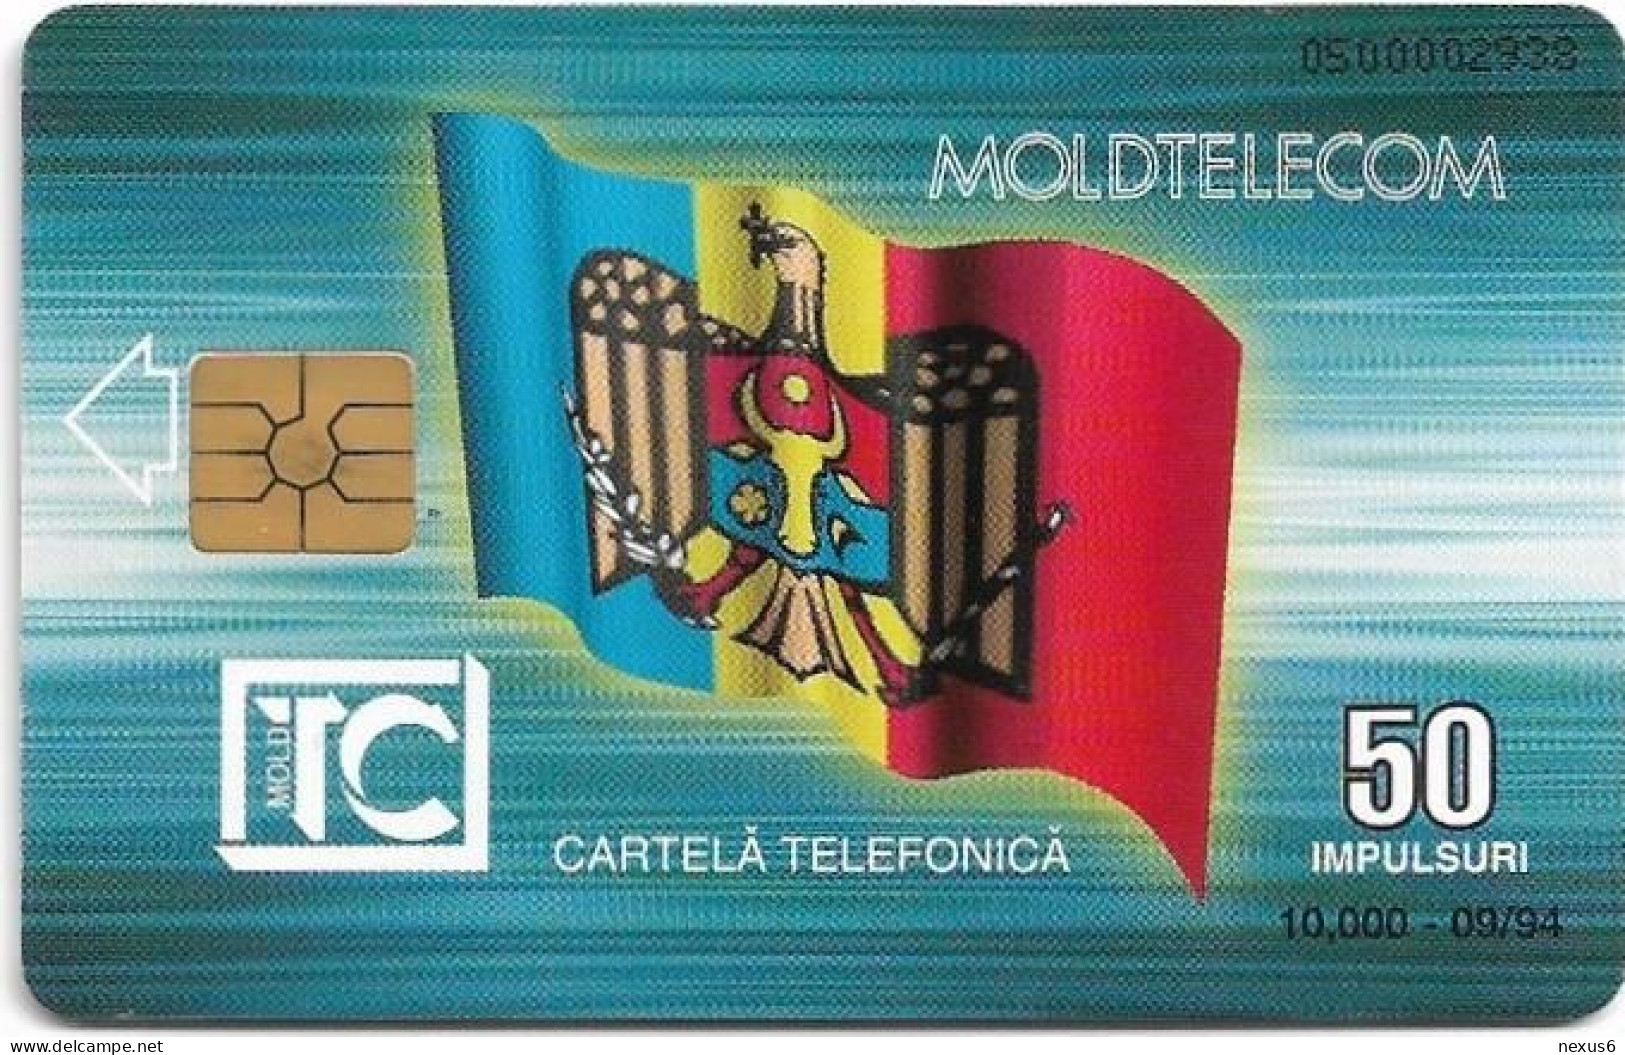 Moldova - Moldtelecom - Flag 1st Issue, Gem2 Black, 09.1994, 50U, 10.000ex, Used - Moldova